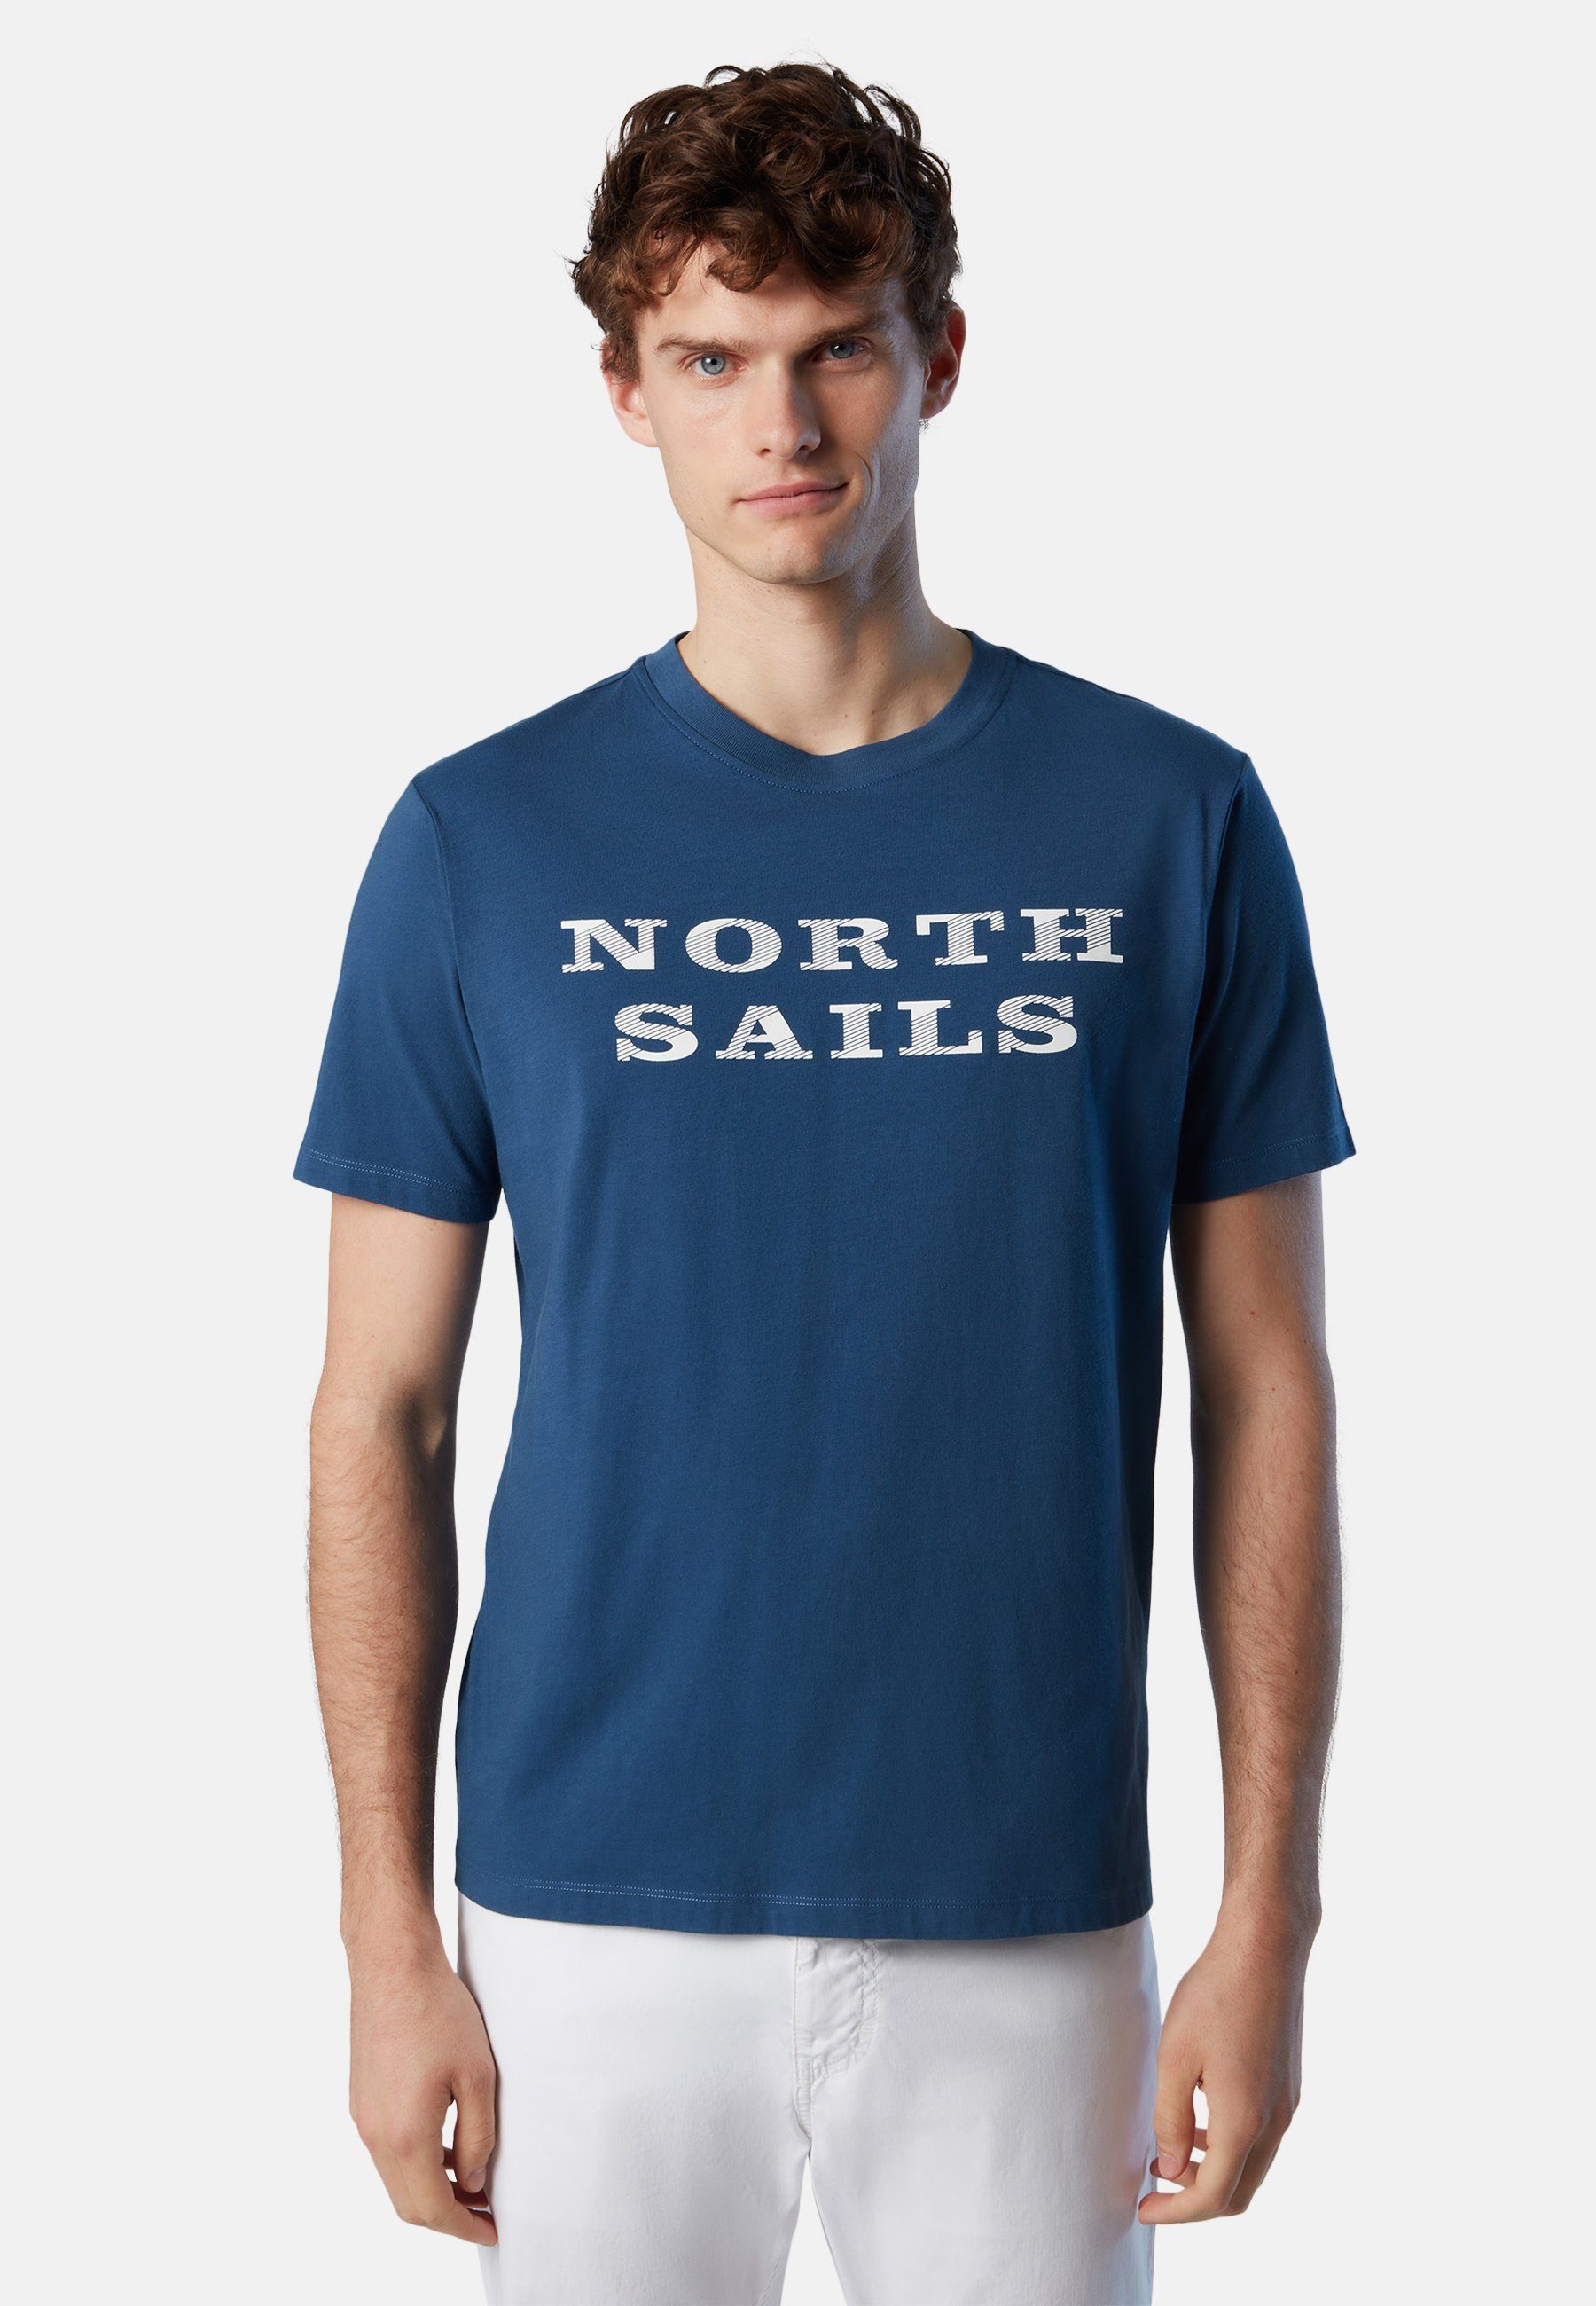 North Sails T-Shirt T-Shirt mit Brustaufdruck Ton-in-Ton-Nähte BLUE